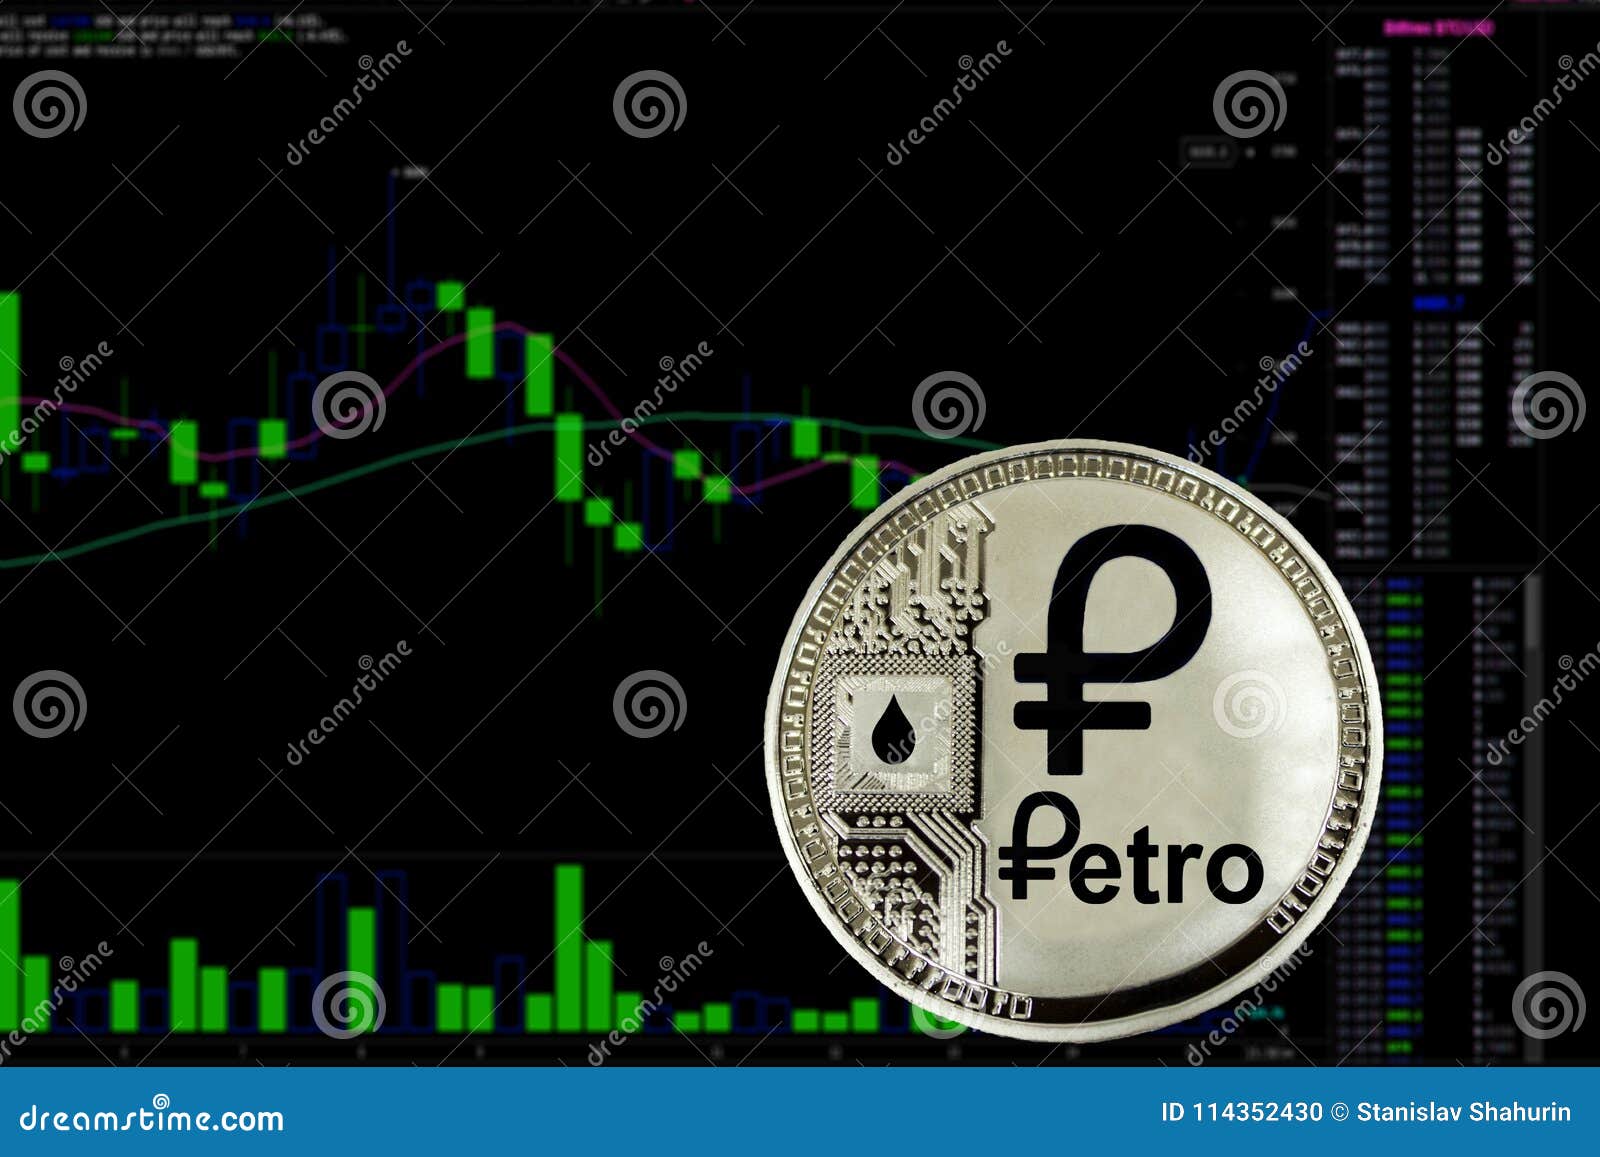 Petro Venezuela Chart